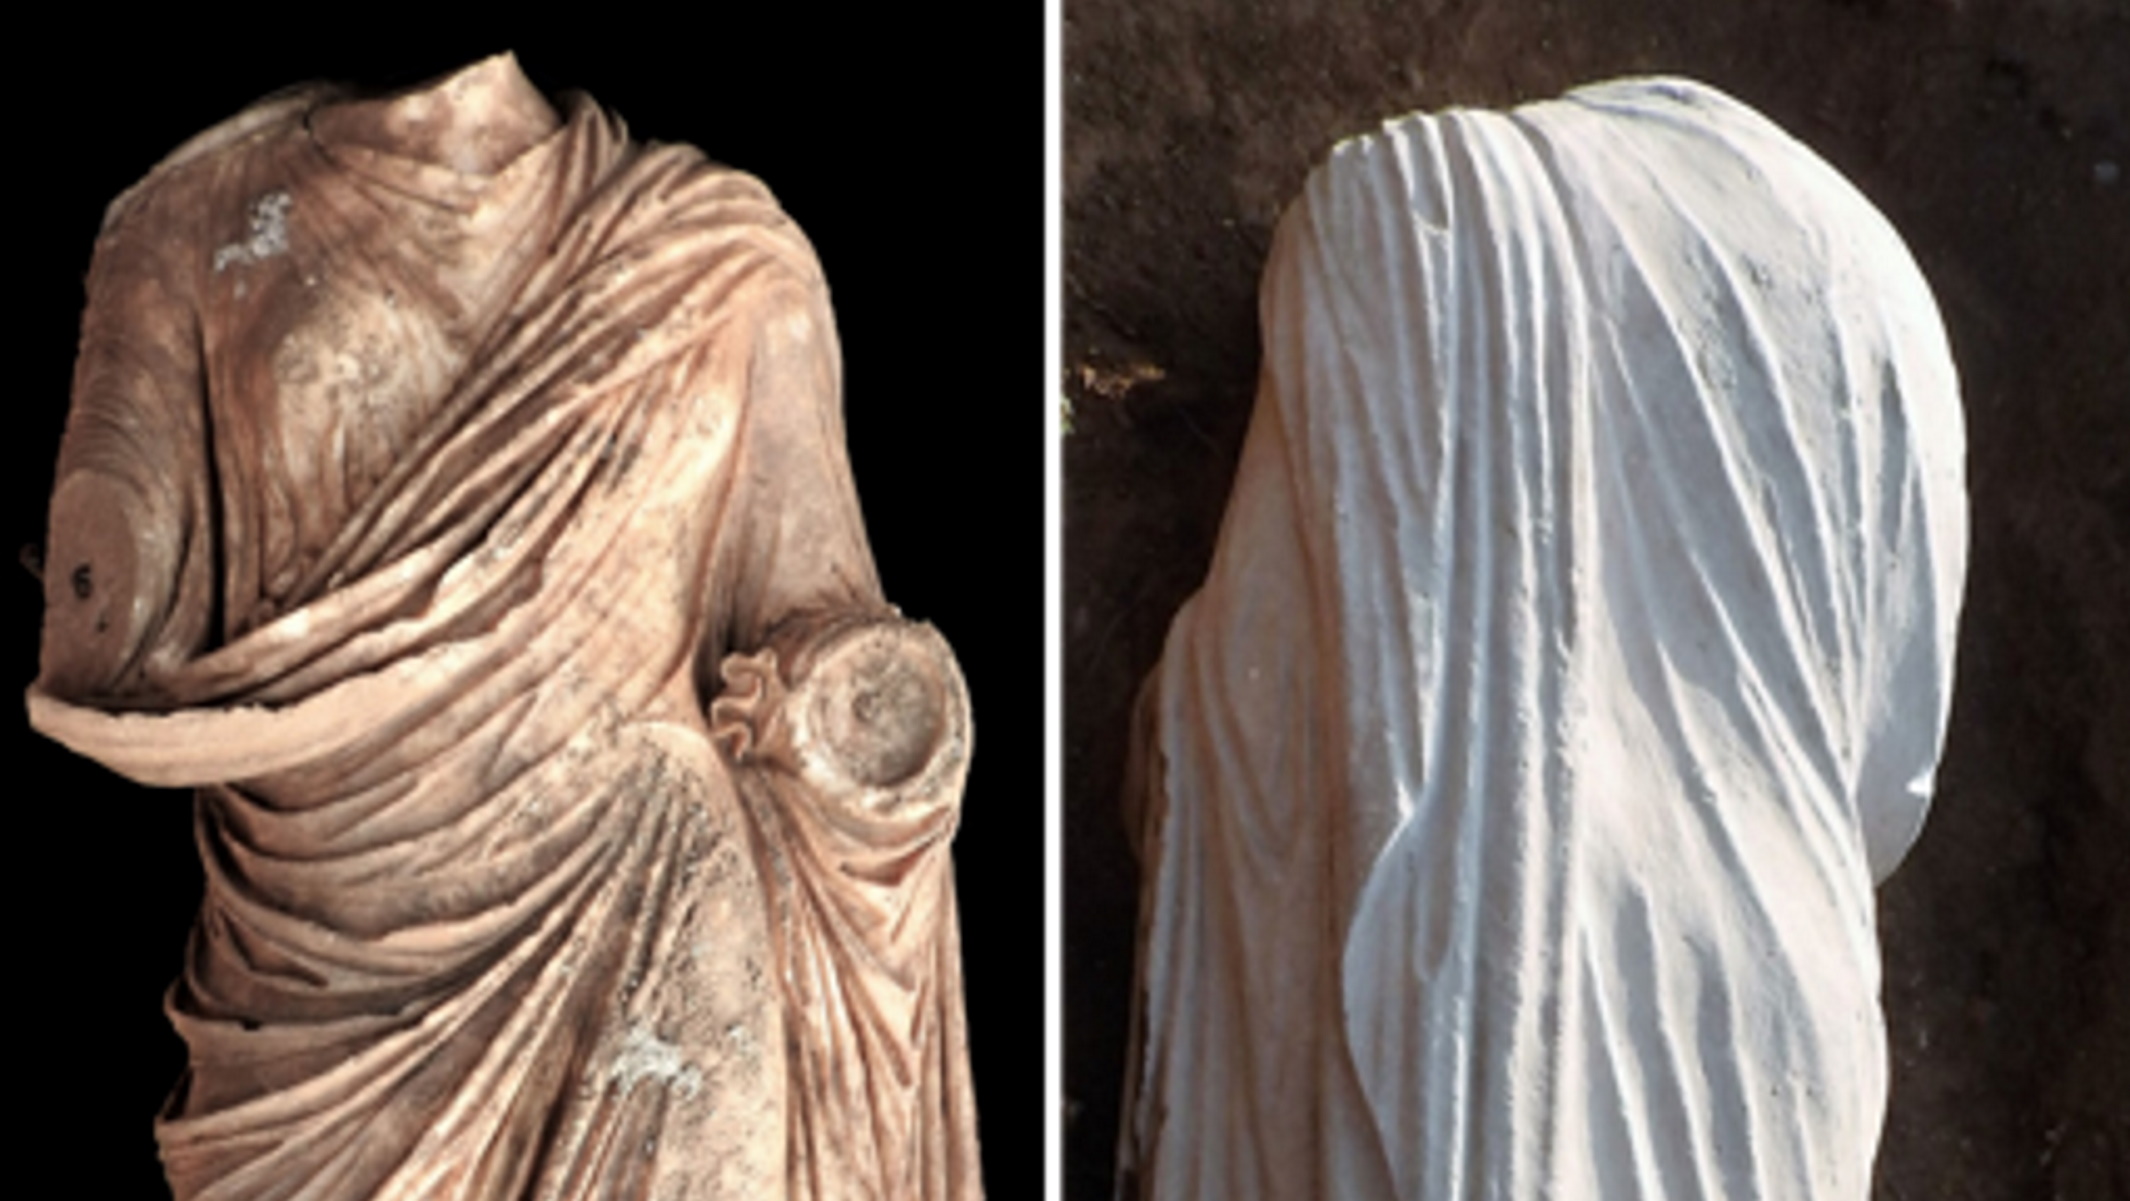 Νέο εύρημα στην Αρχαία Επίδαυρο: Εντυπωσιακό άγαλμα γυναίκας αποκάλυψαν οι τελευταίες βροχές